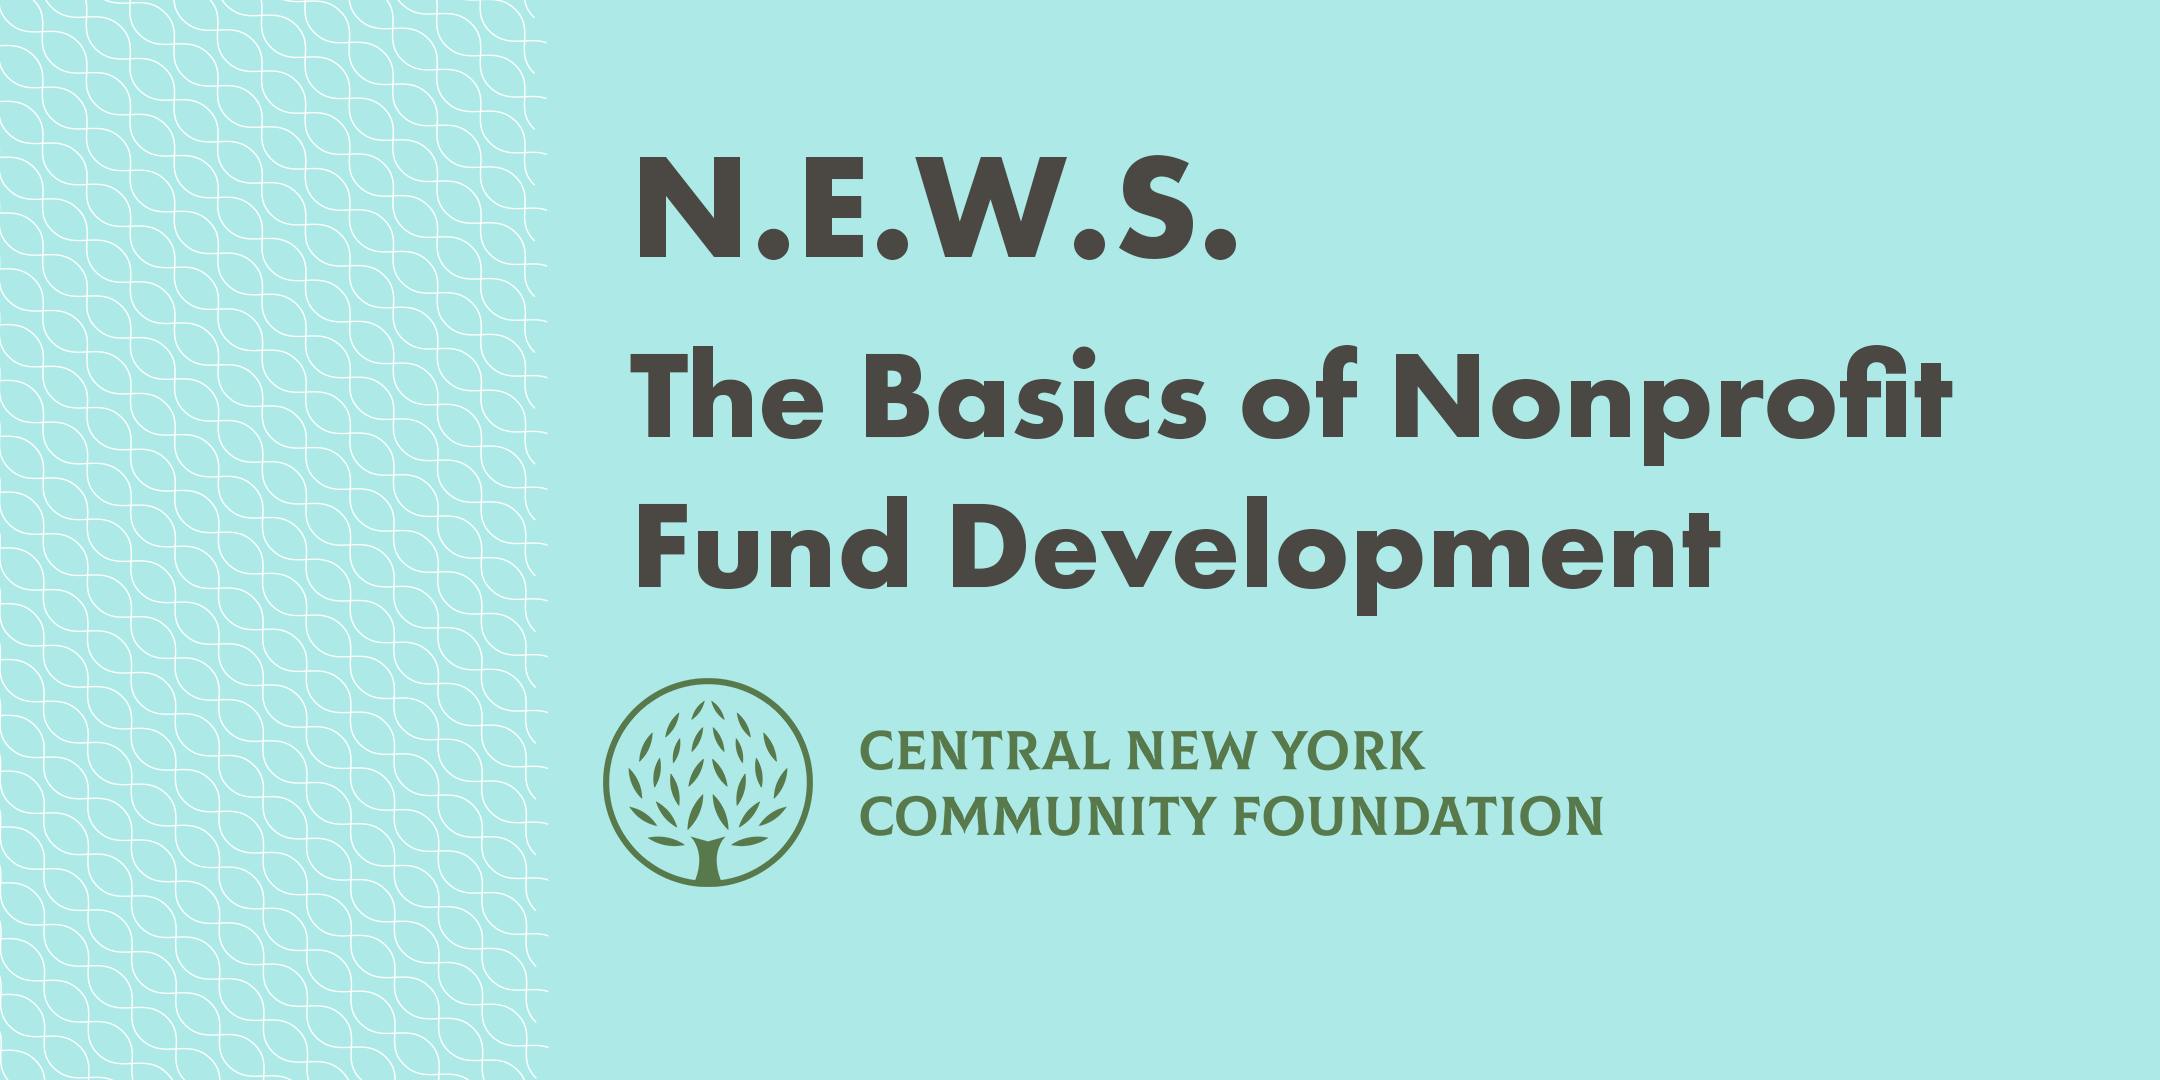 N.E.W.S. 2019: The Basics of Nonprofit Fund Development